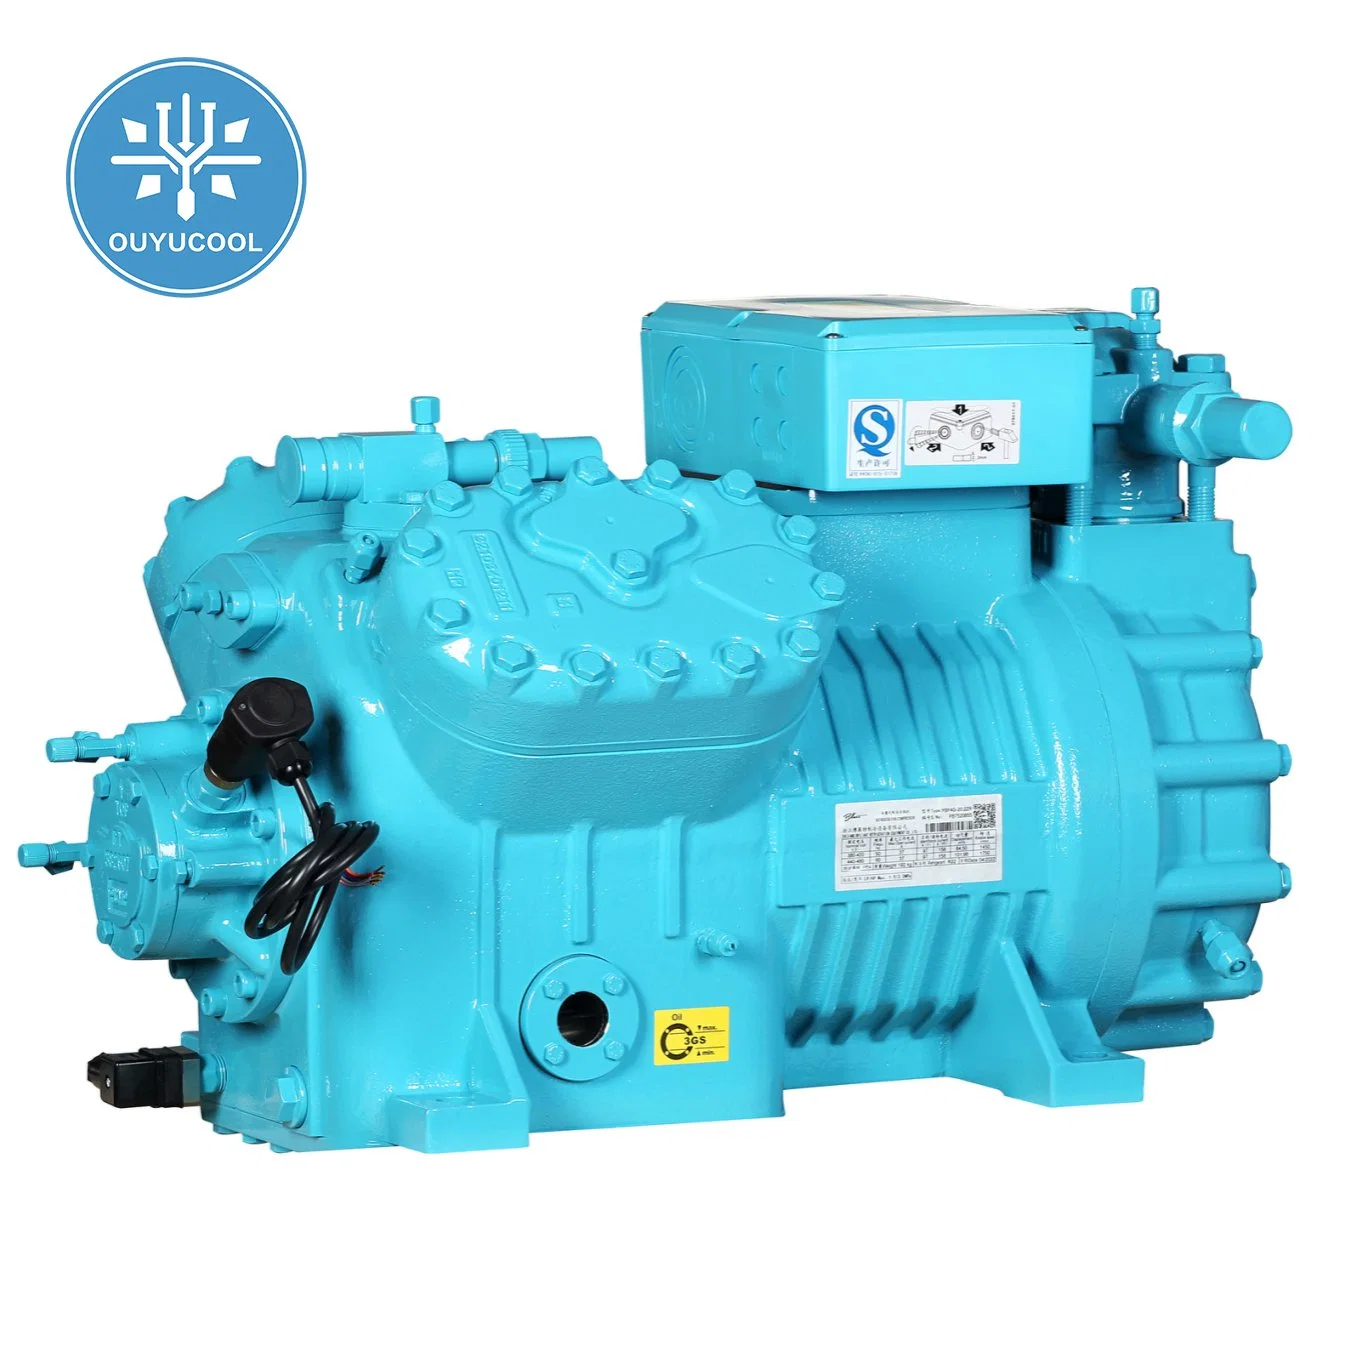 Compressor de equipamento de refrigeração de alta qualidade para refrigeração industrial Ybf2DC - 3.2g